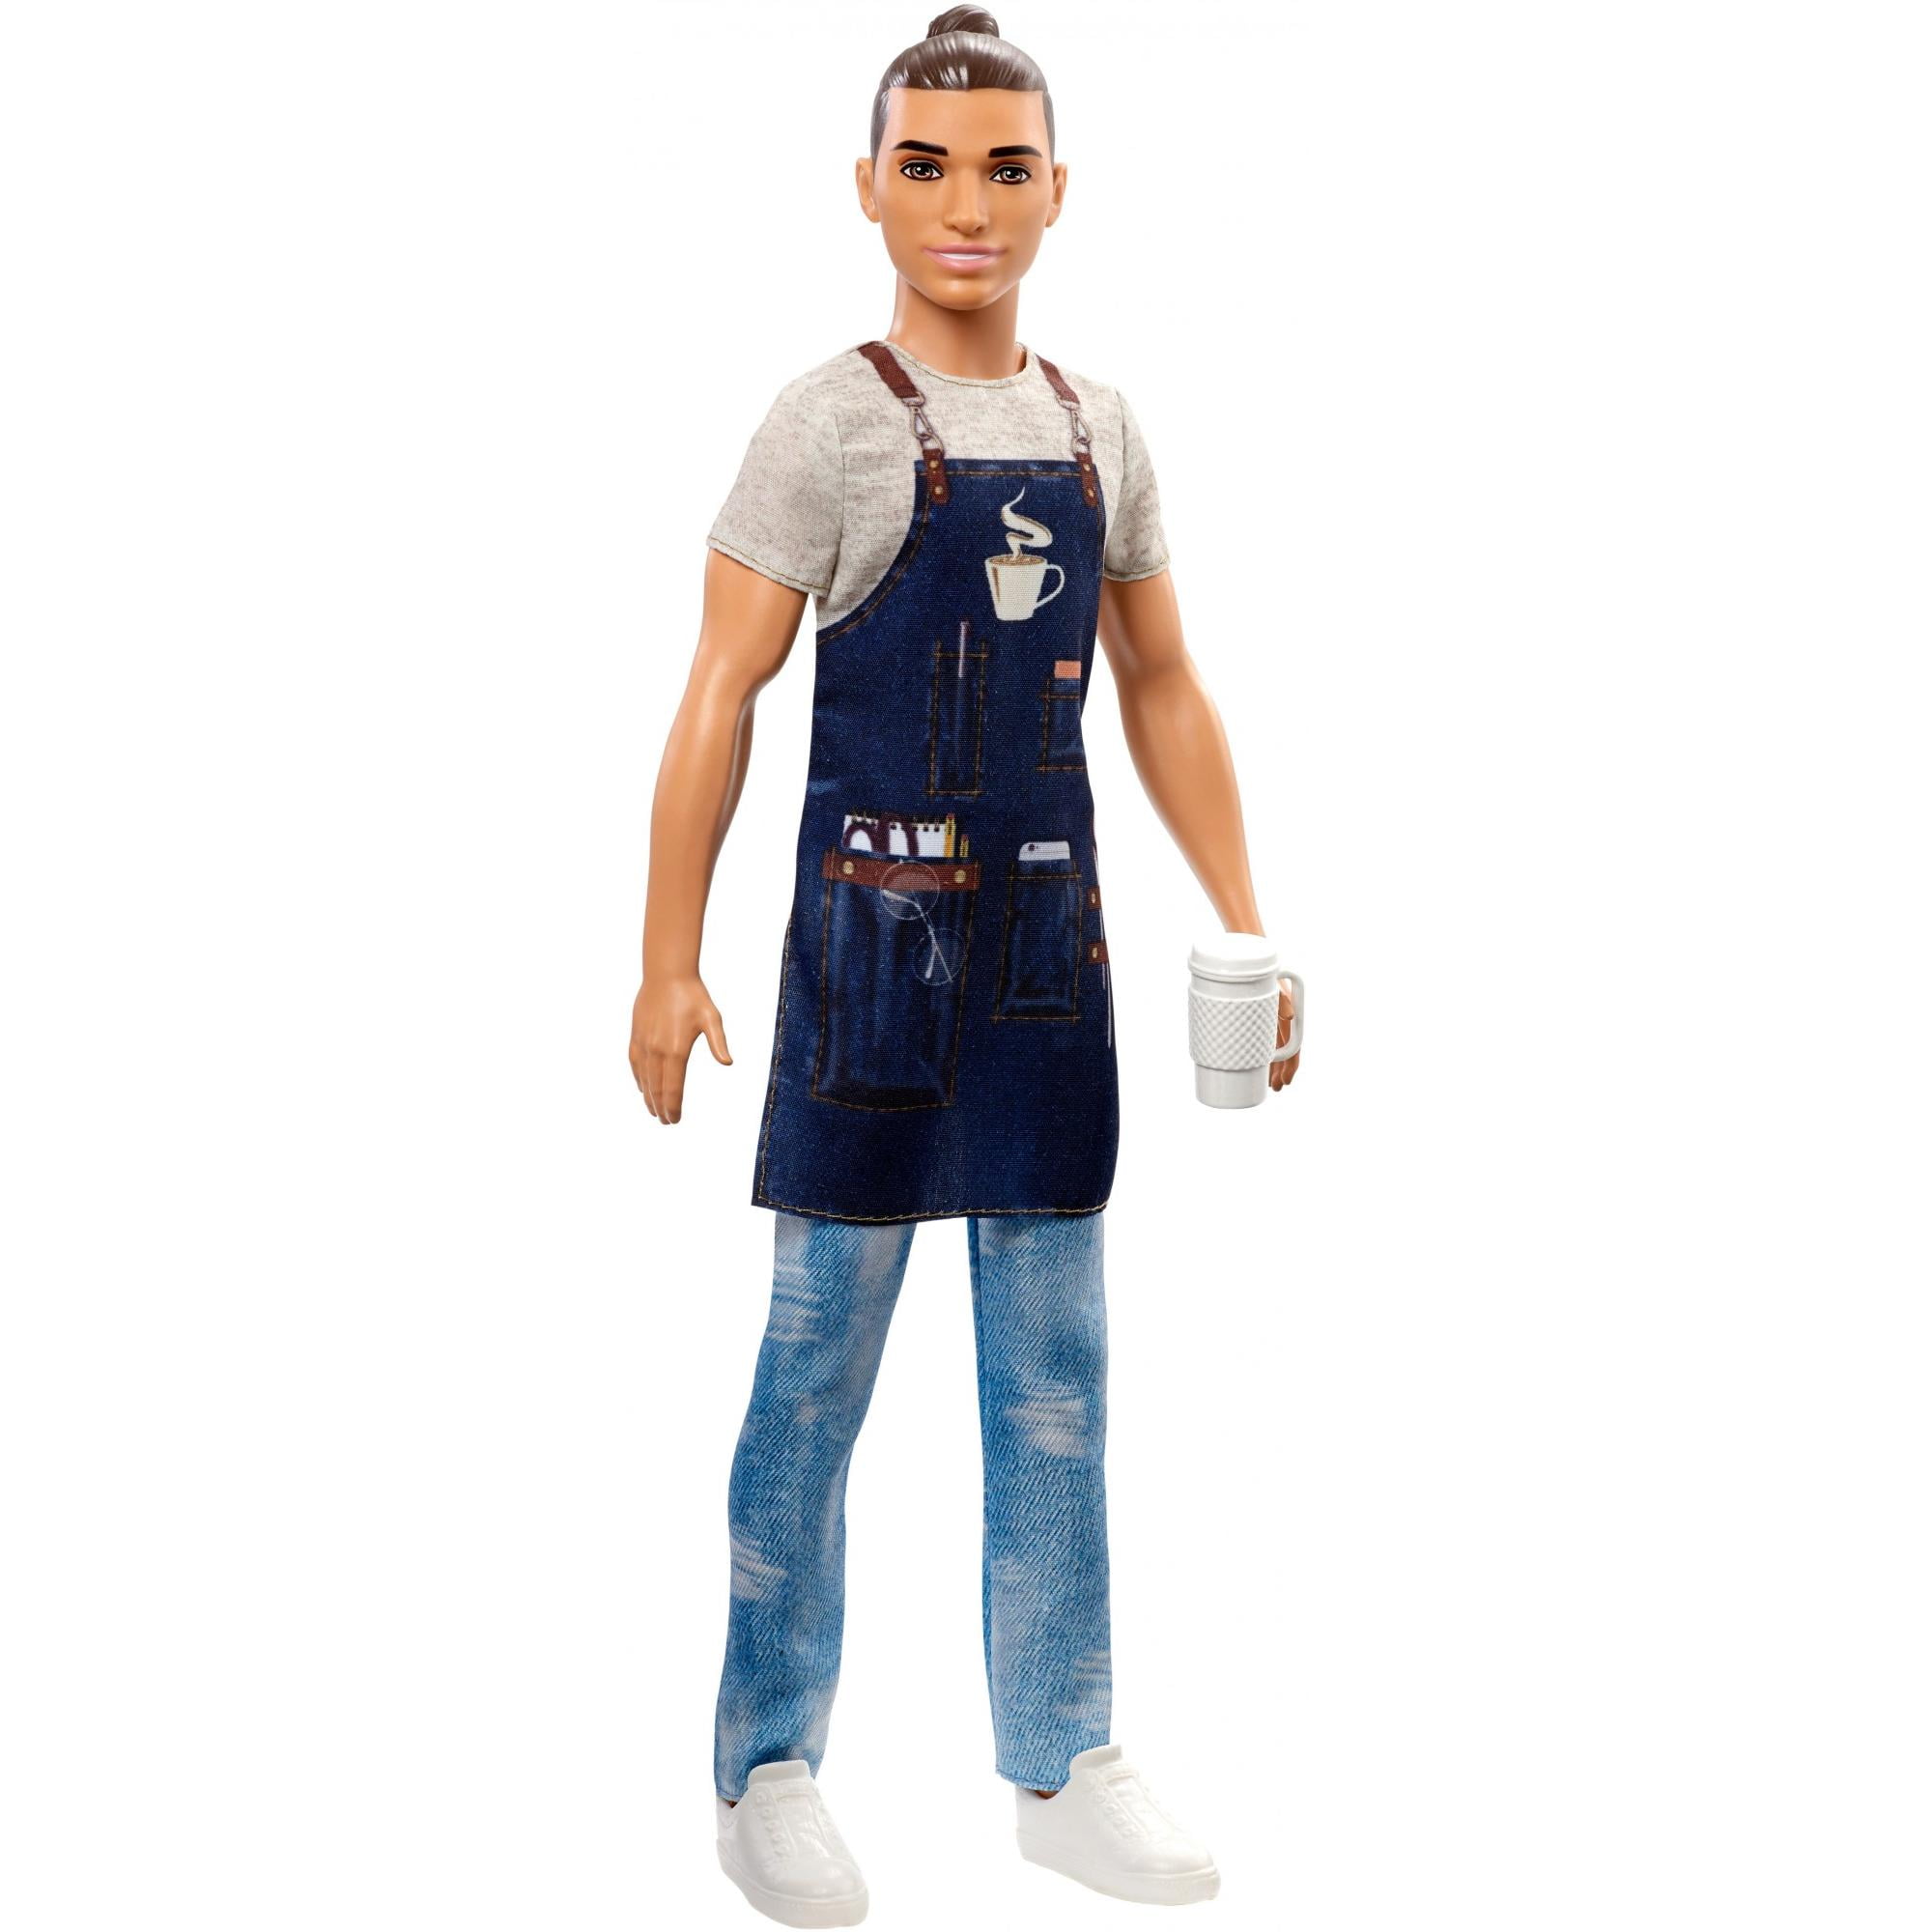 Barbie Careers Ken Doll Barista Male Boy by Mattel for sale online 